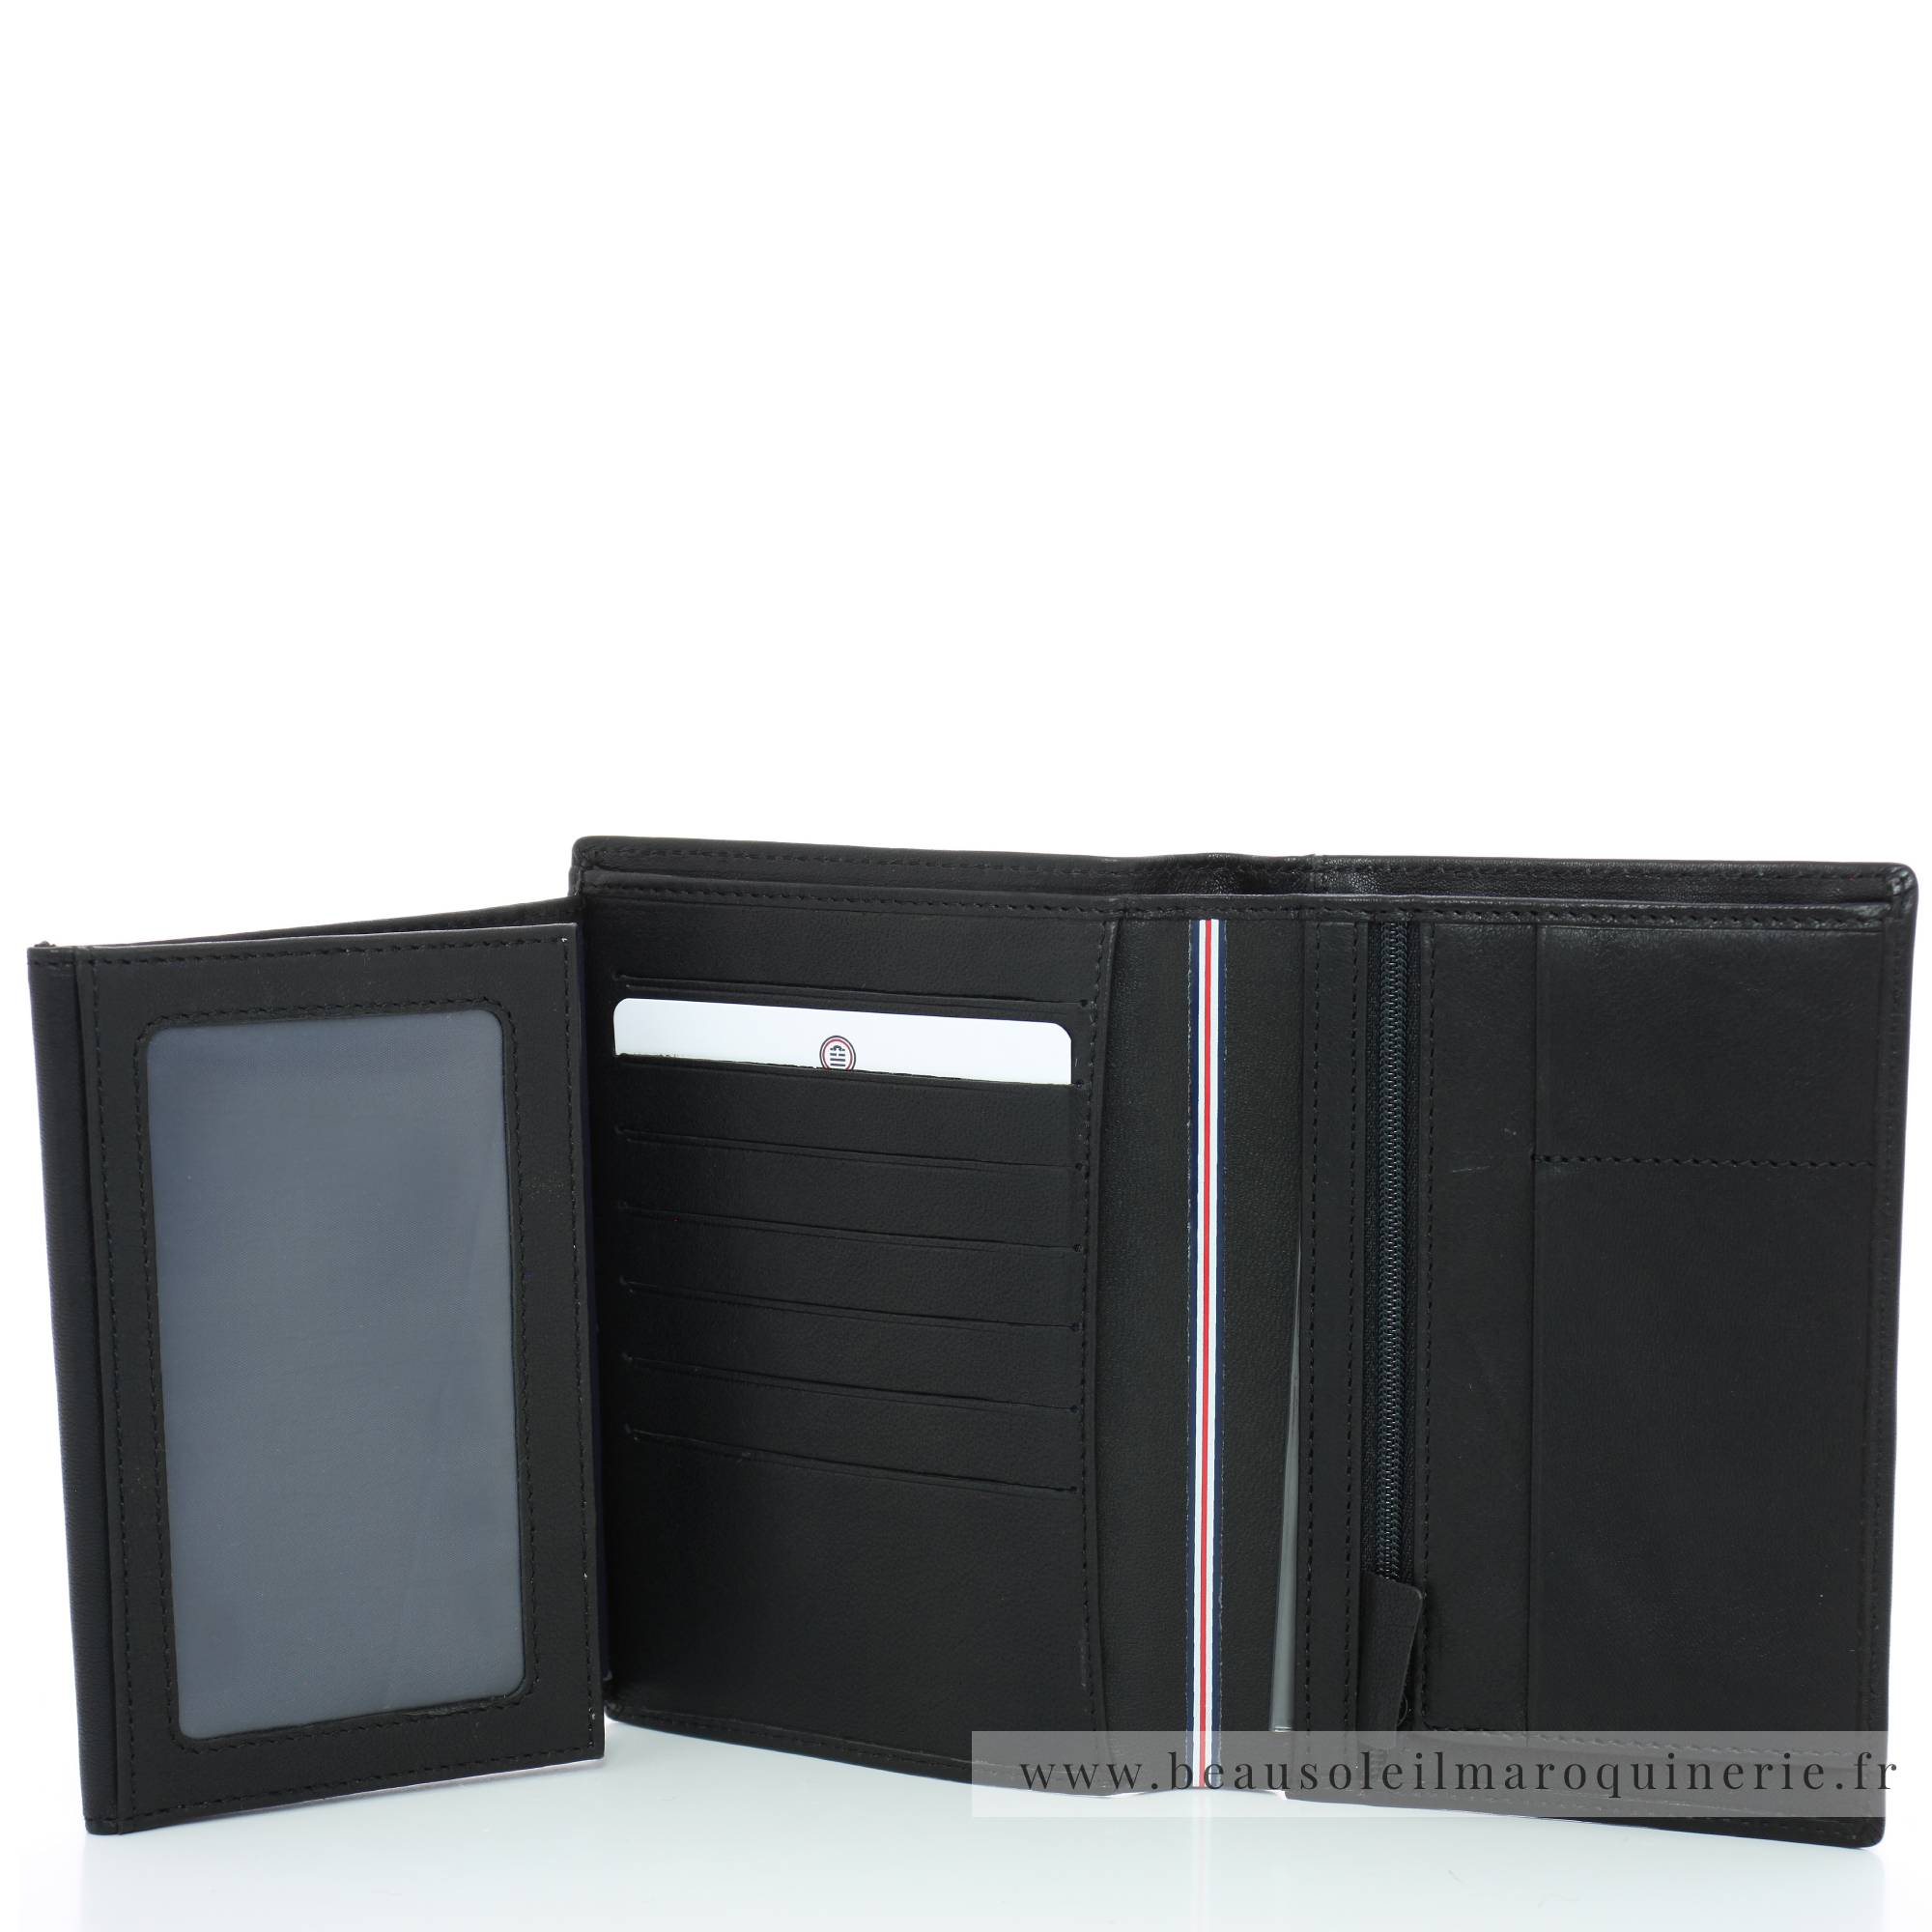 Portefeuille porte-cartes Serge Blanco en cuir ligne Anchorage, référence ANC21013 999 noir intérieur